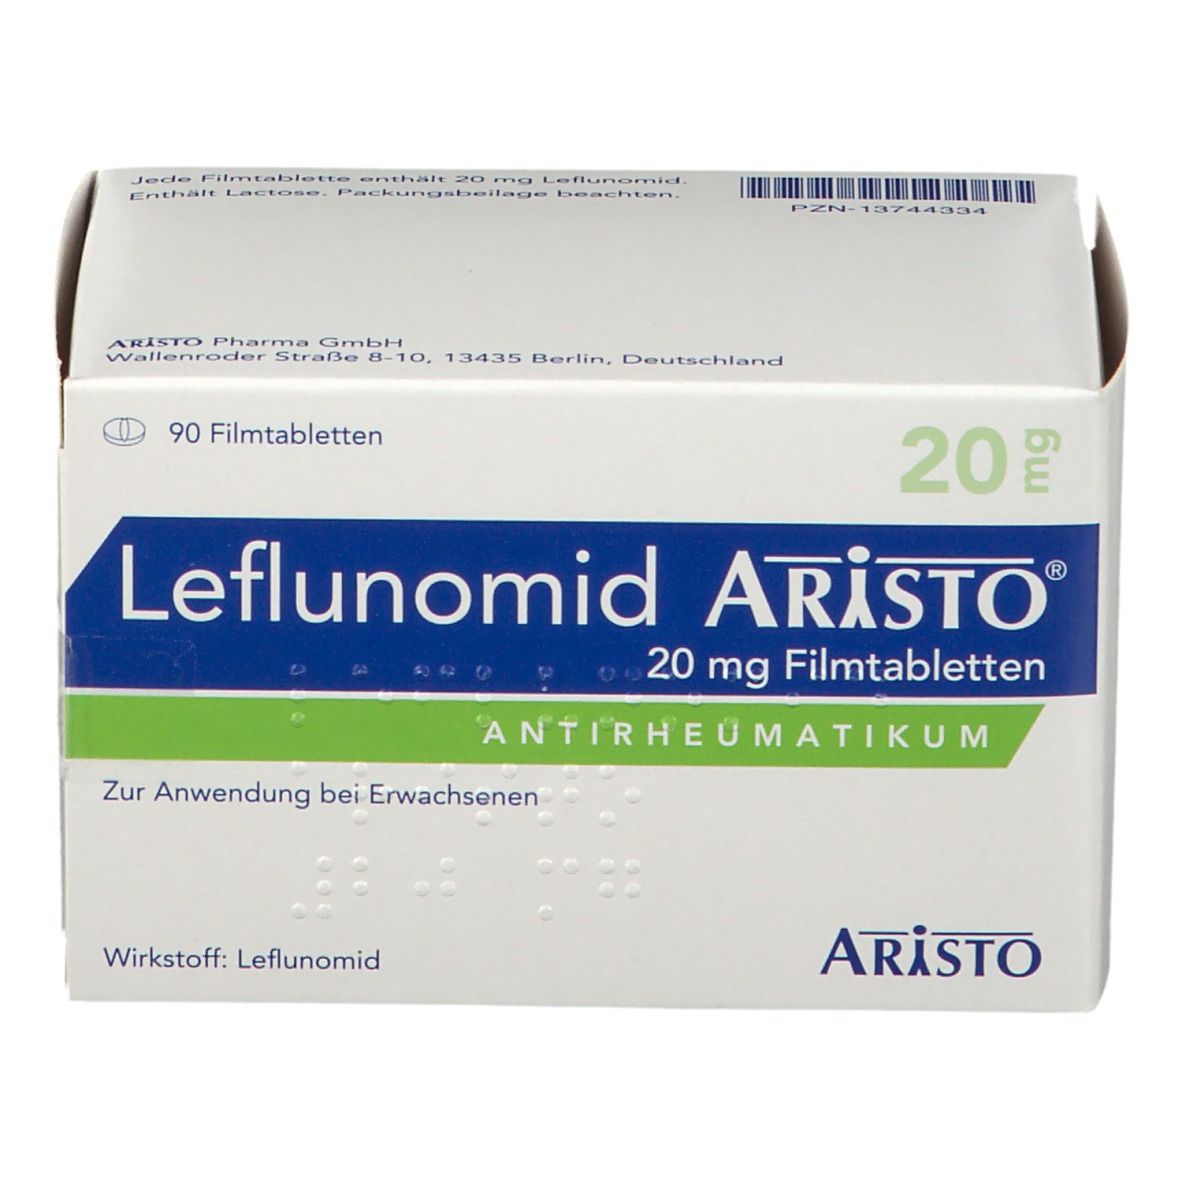 Leflunomid Aristo® 20 mg